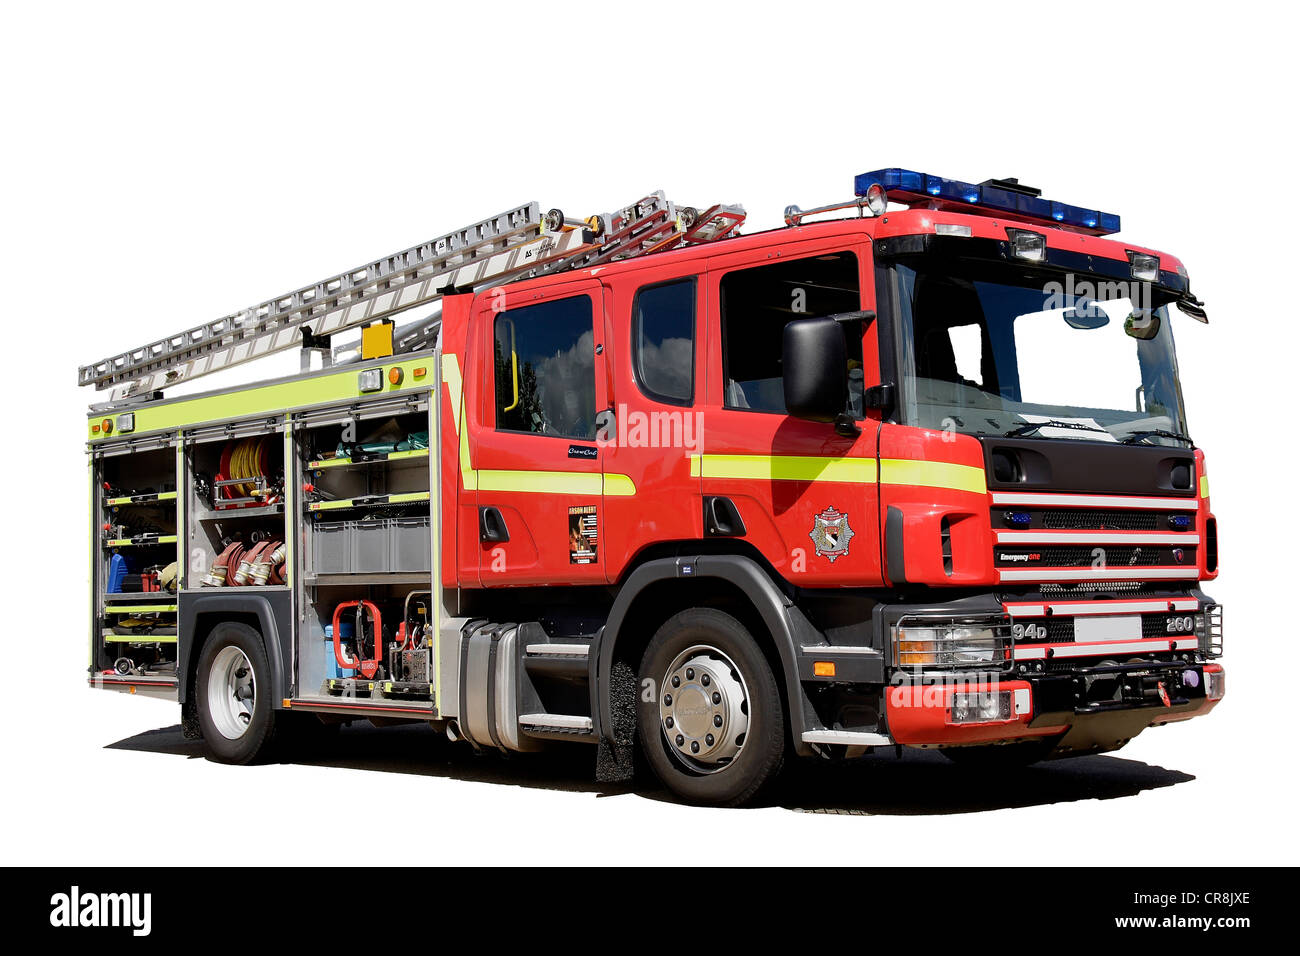 British Fire Engine UK Appliance avec casiers ouverts. Image extraite. Découpe. Banque D'Images